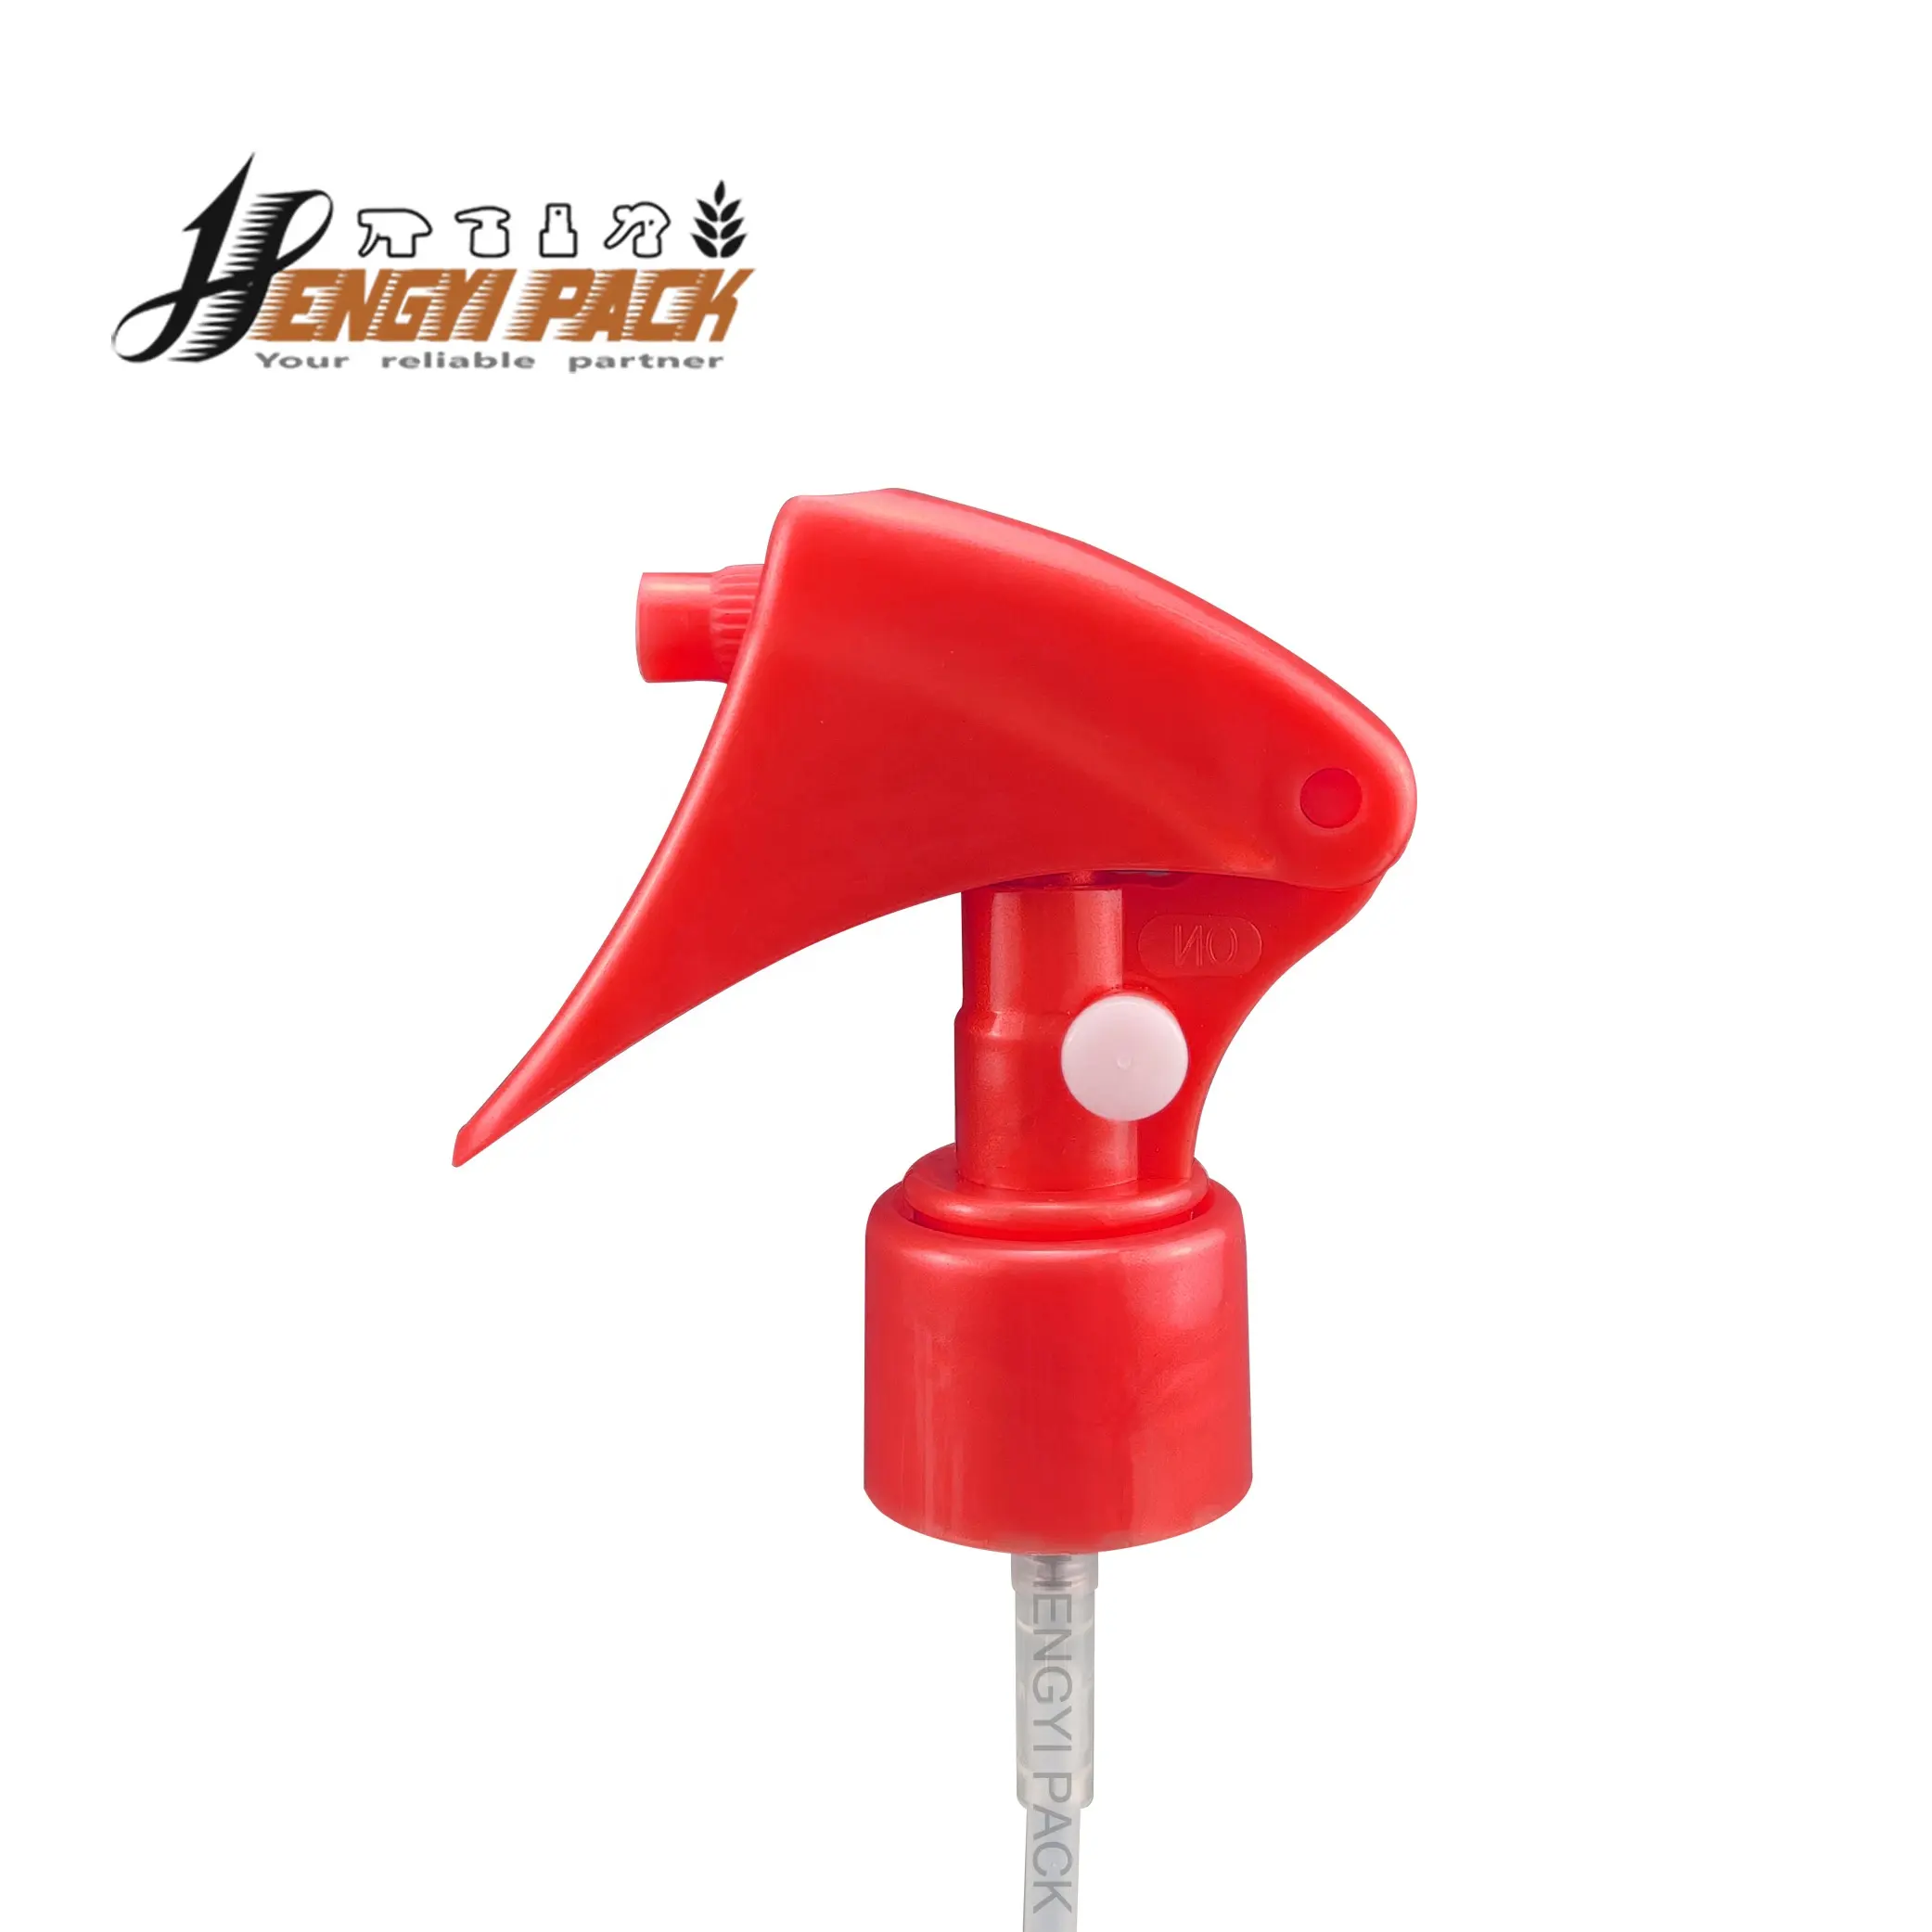 Kunststoff Mini Trigger Sprayer Pumpsp ender für Haarspray, Luft erfrischung und Desinfektion sowie Insekten schutzmittel